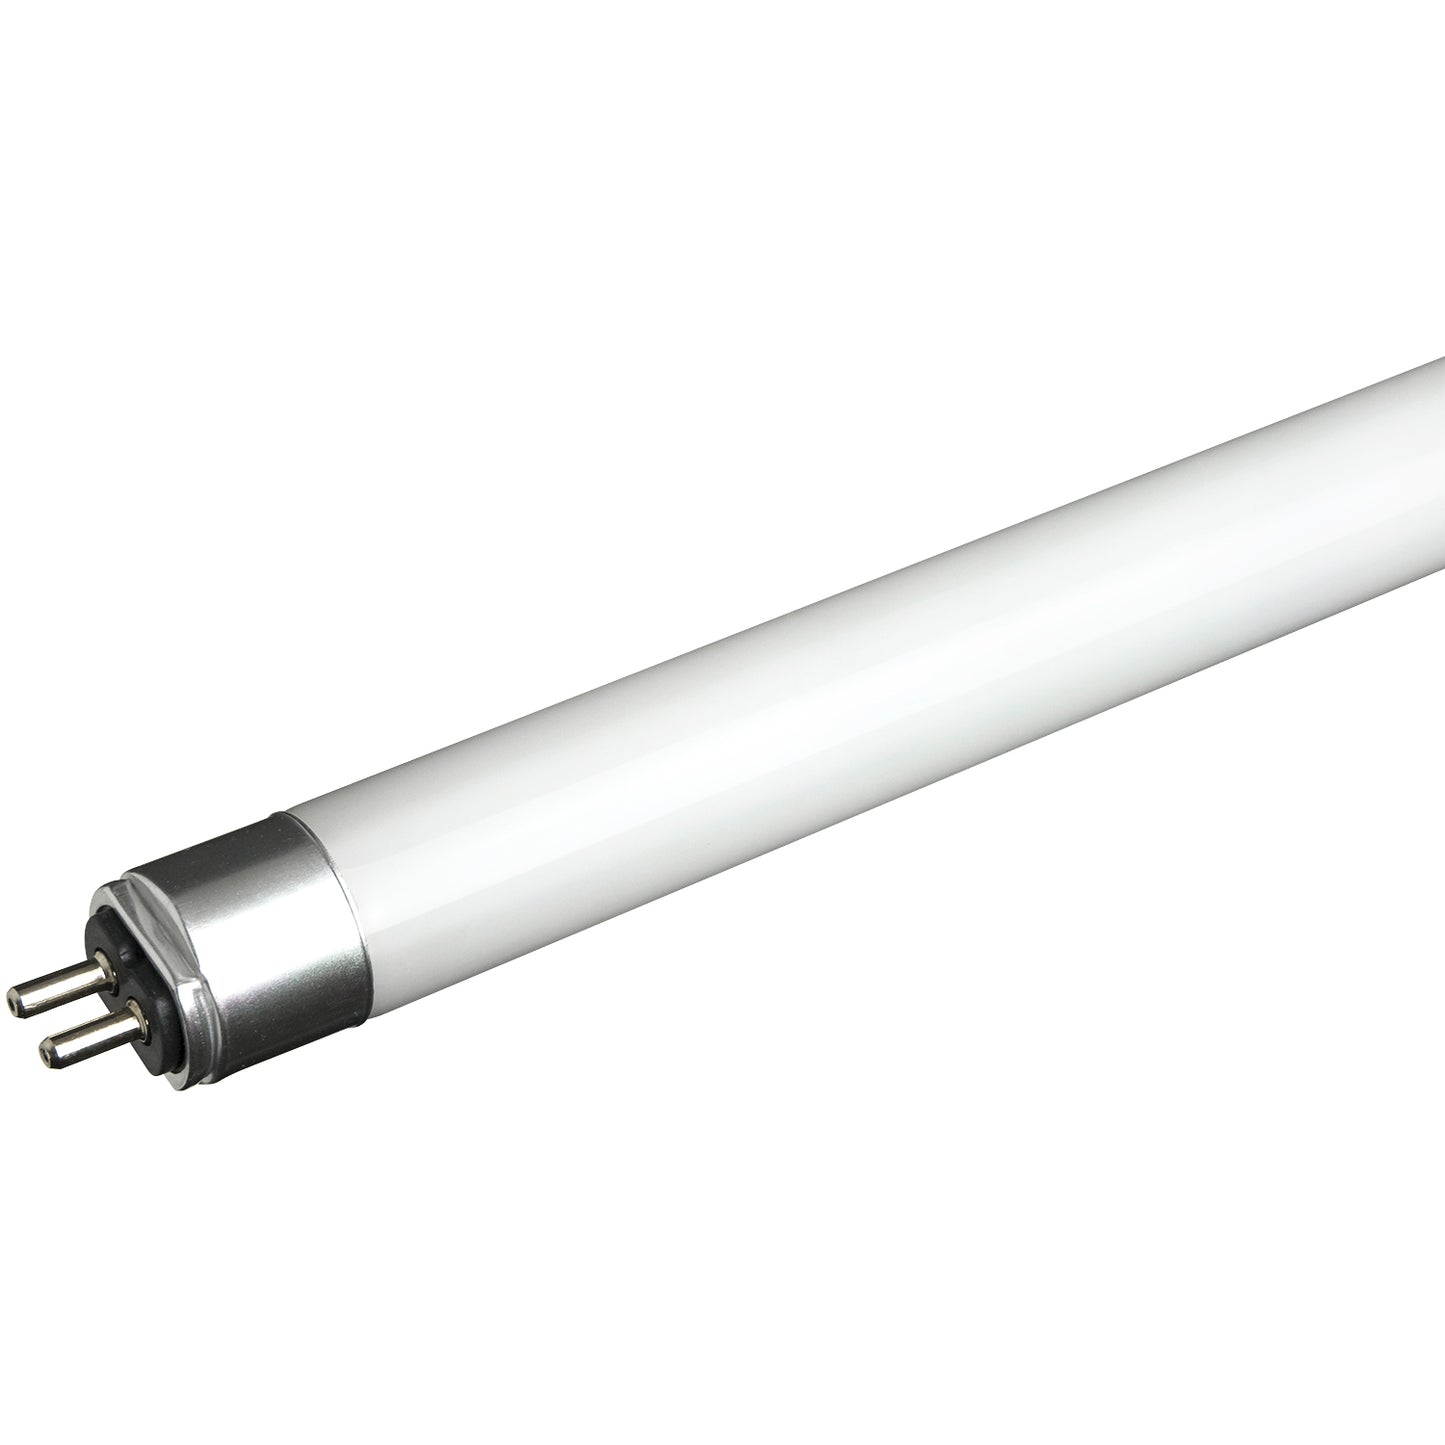 Sunlite T5/LED/IS/4'/25W/65K/HL 25 Watt T5 Lamp Medium Bi-Pin (G13) Base Daylight, Pack of 25